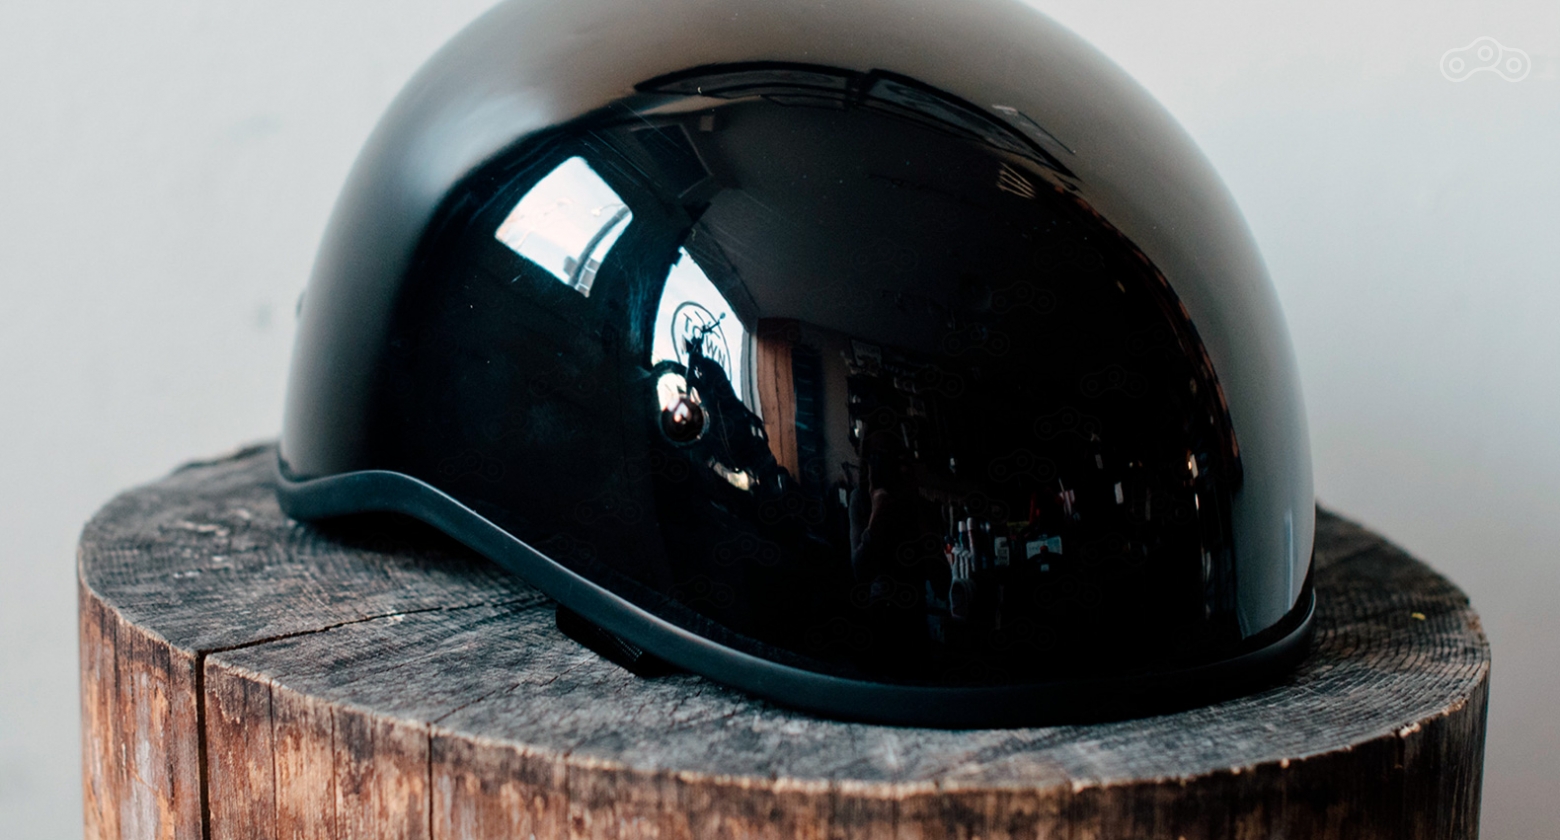 Шлем-половинка – решение, скорее для отвода глаз, чем для реальной защиты. История мотошлемов на Омоймот